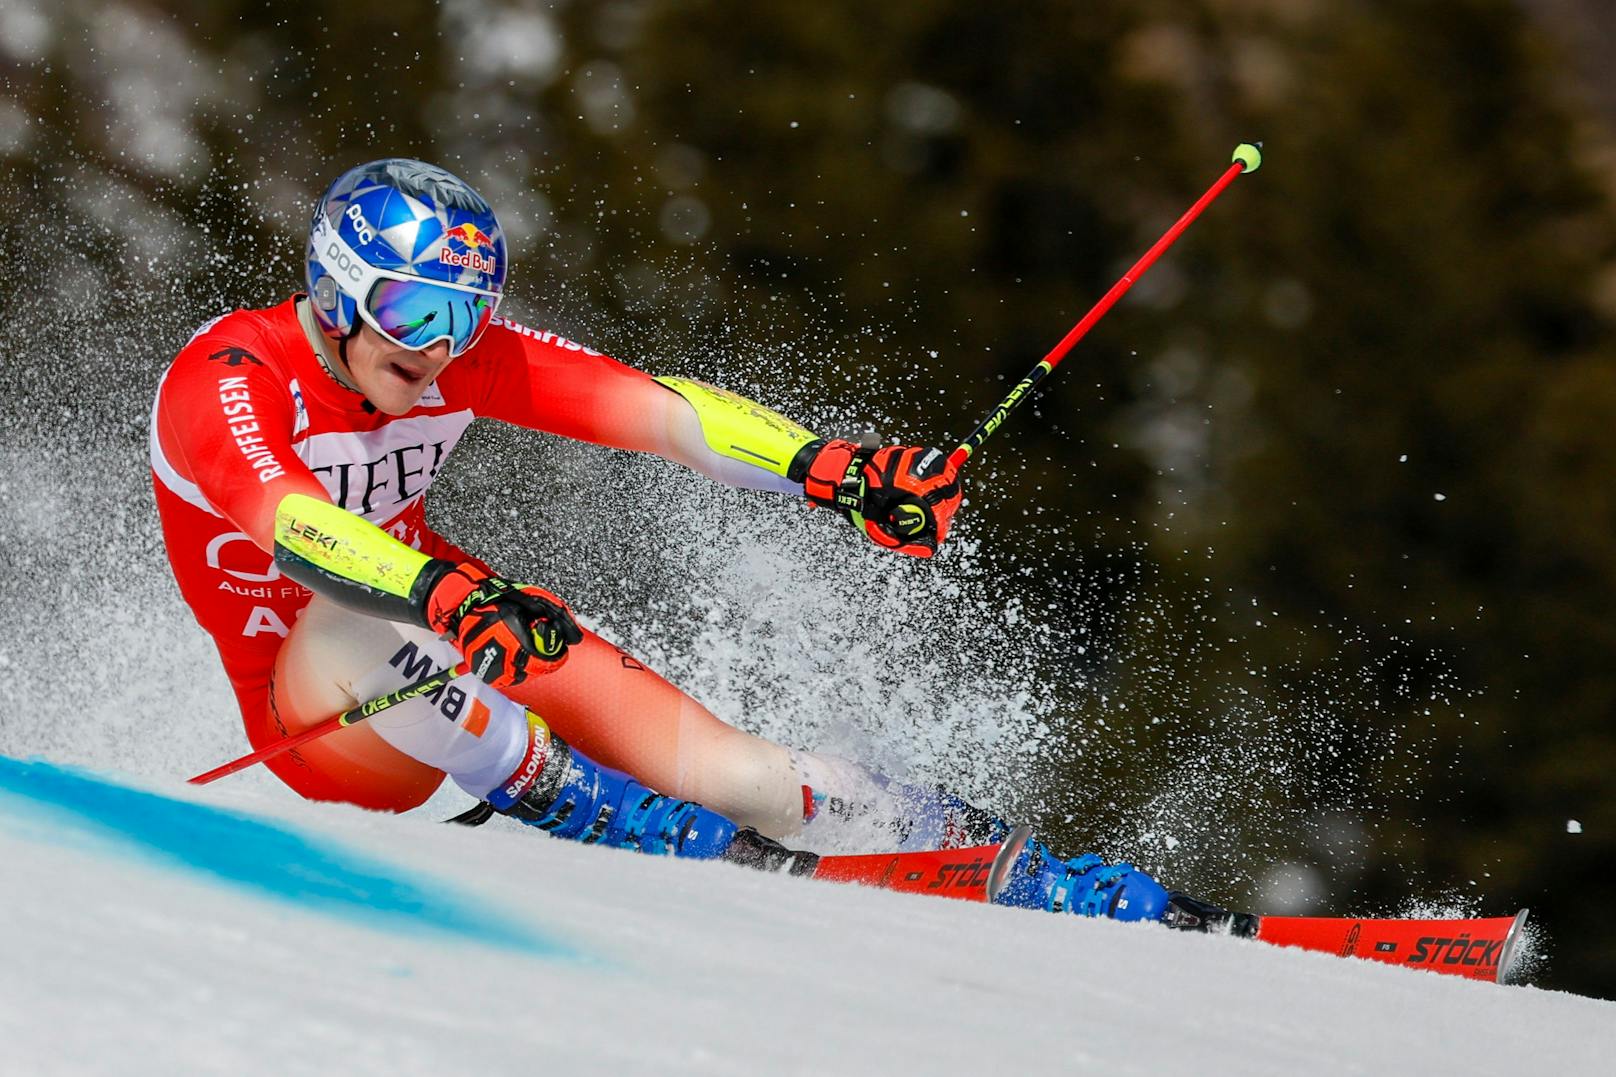 Der zweite Riesentorlauf in Aspen, derselbe Sieger. Marco Odermatt war in dieser Saison im Riesentorlauf unschlagbar. Wieder siegte der Schweizer vor seinem Teamkollegen Loic Meillard.&nbsp;